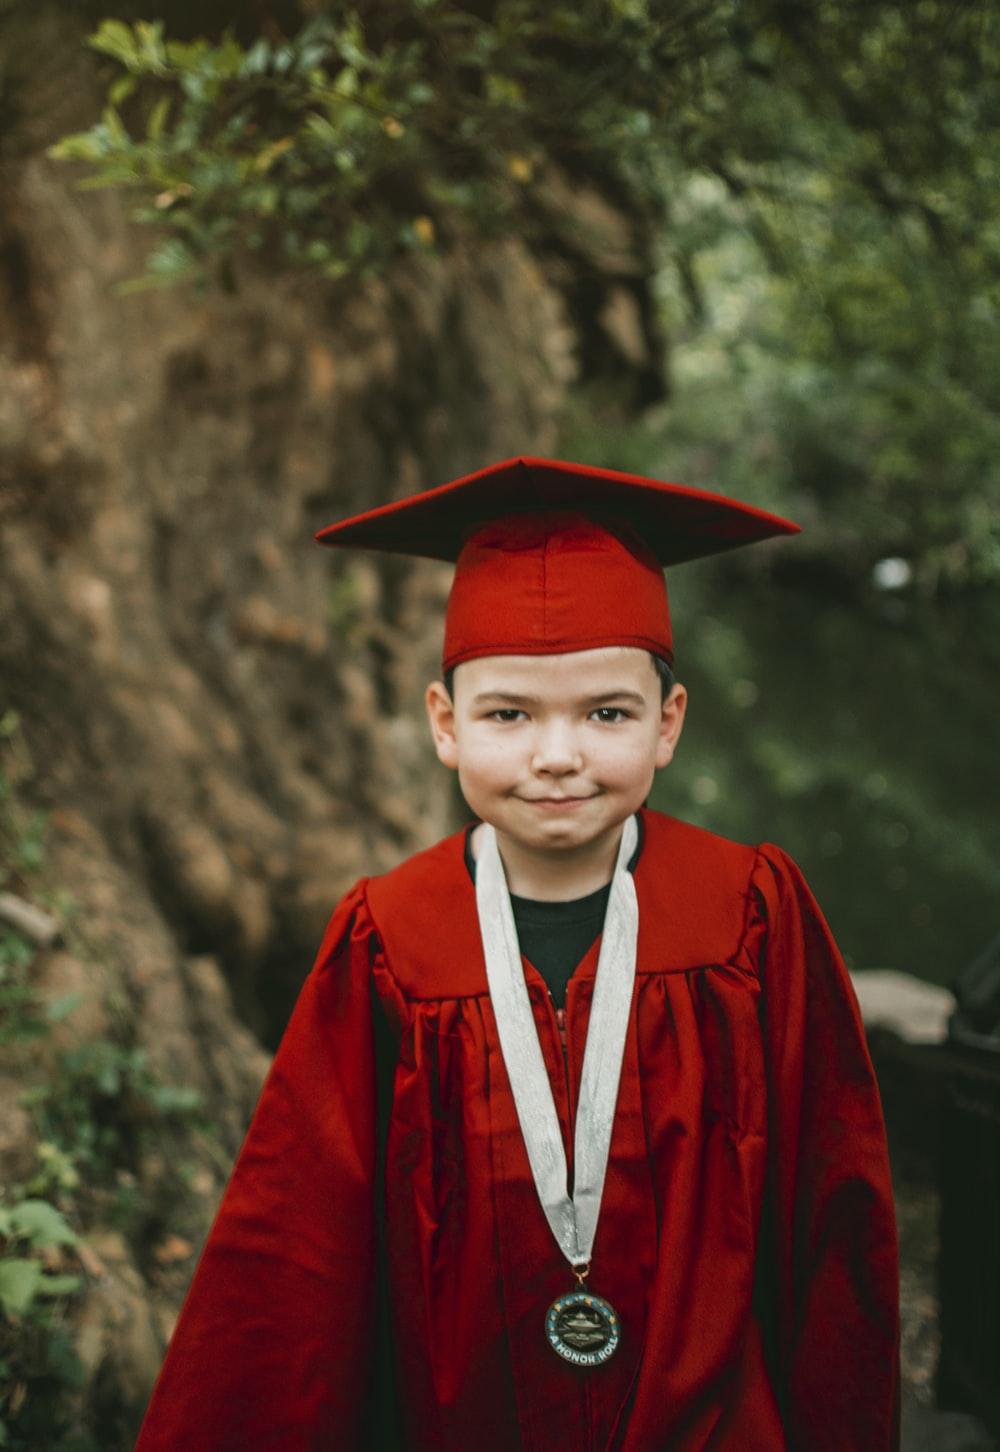 A boy graduating from school